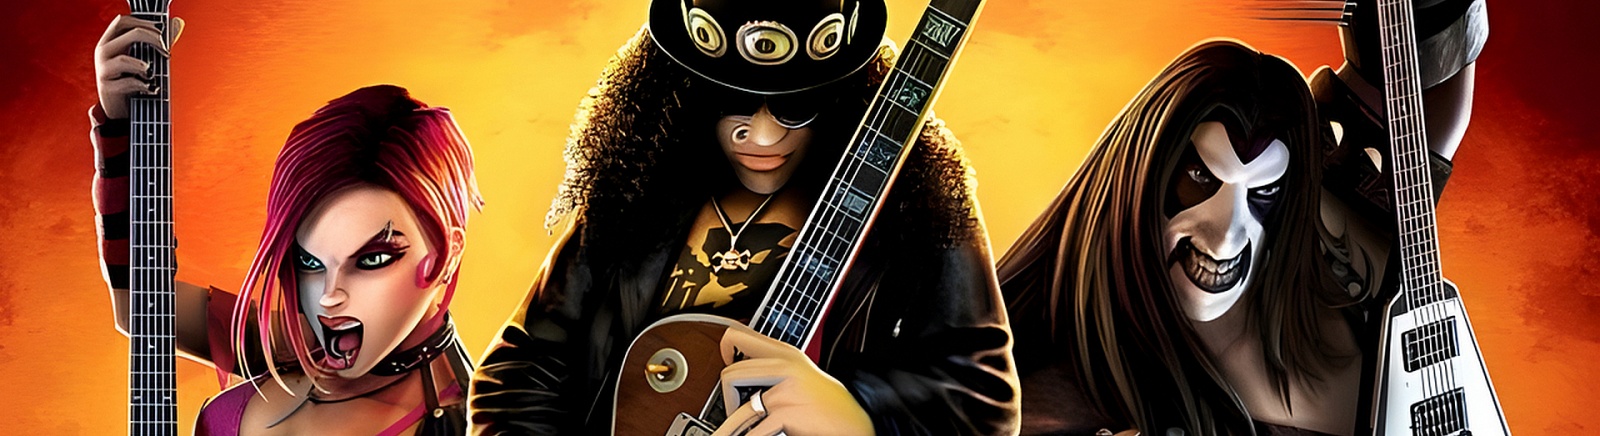 Дата выхода Guitar Hero 3: Legends of Rock (Guitar Hero 3: Легенды рока)  на PC, PS3 и PS2 в России и во всем мире